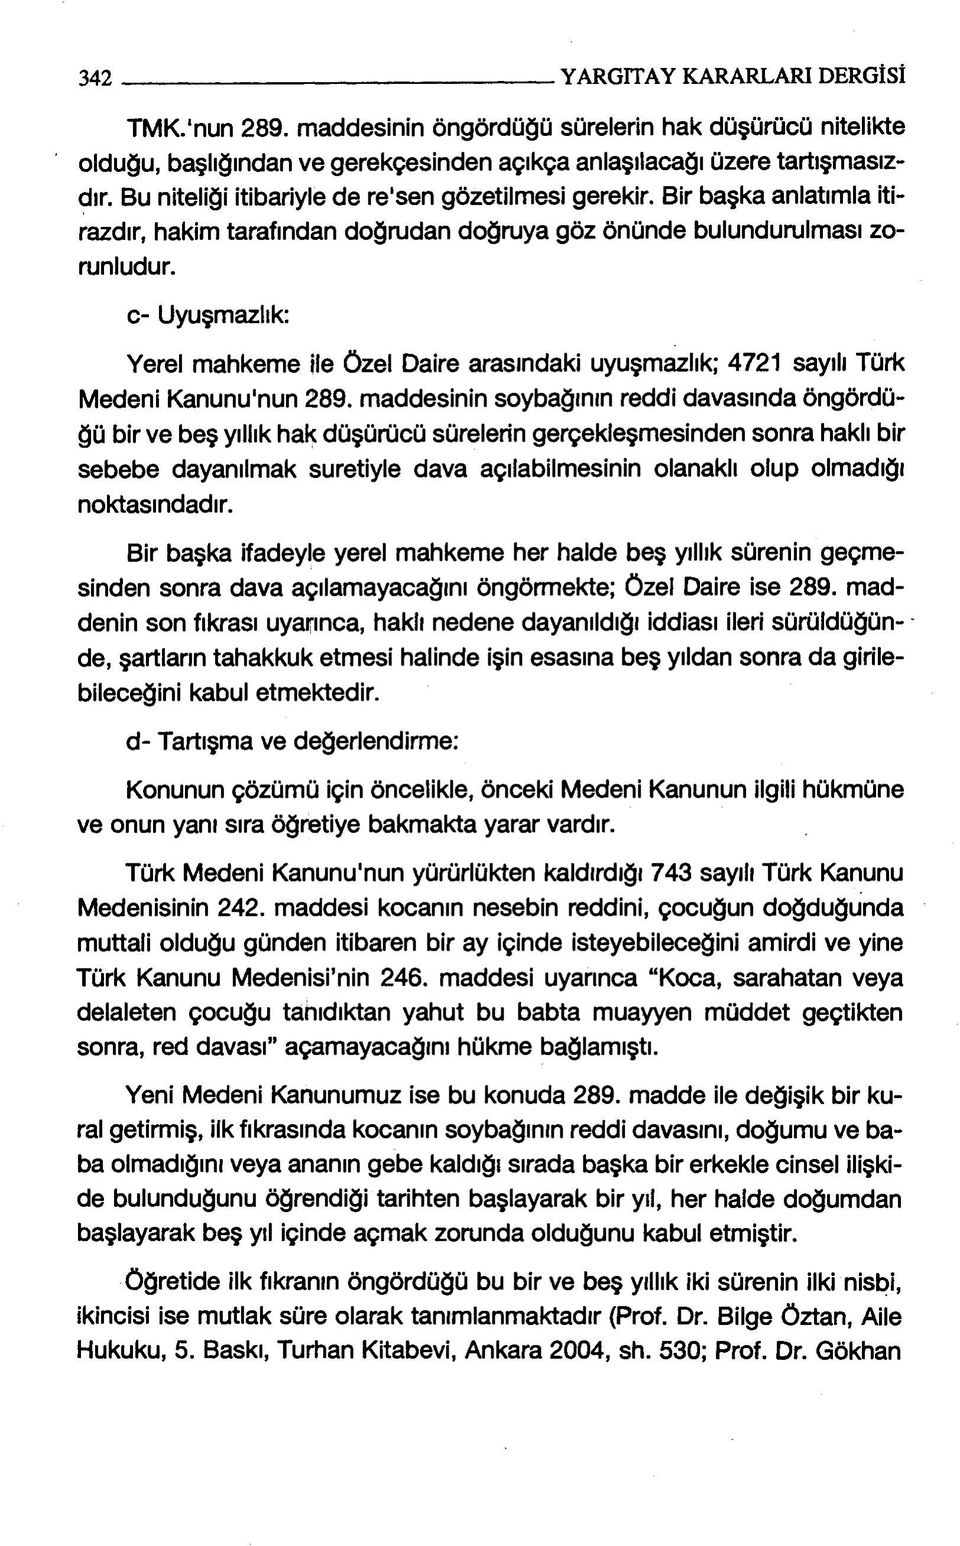 c- Uyuşmazlık: Yerel mahkeme ile özel Daire arasındaki uyuşmazlık; 4721 sayılı Türk Medeni Kanunu'nun 289.